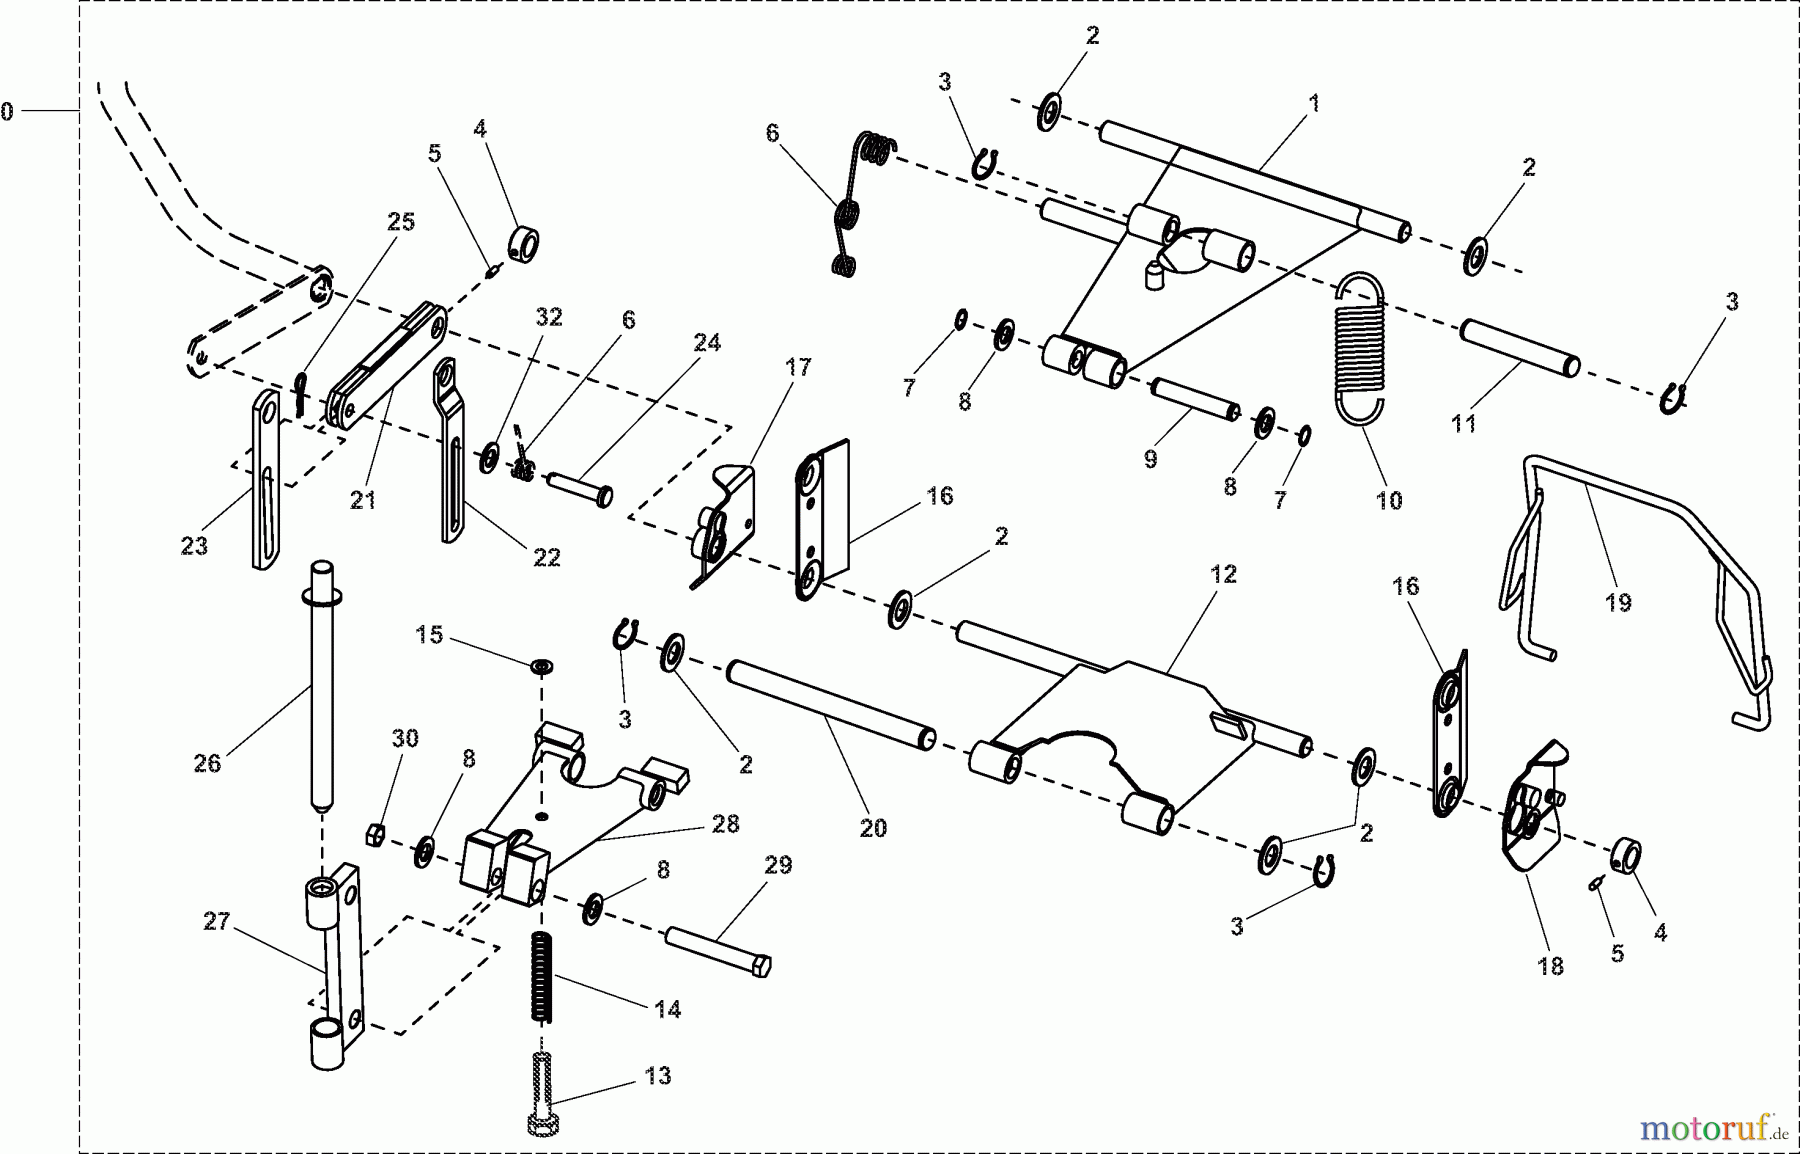  Dolmar Rasentraktoren Zubehör RS-120, TA-250, TK-420, TK-520, TS-125 23  TS-125 - Schneeräumschild (Schnellwechsler)